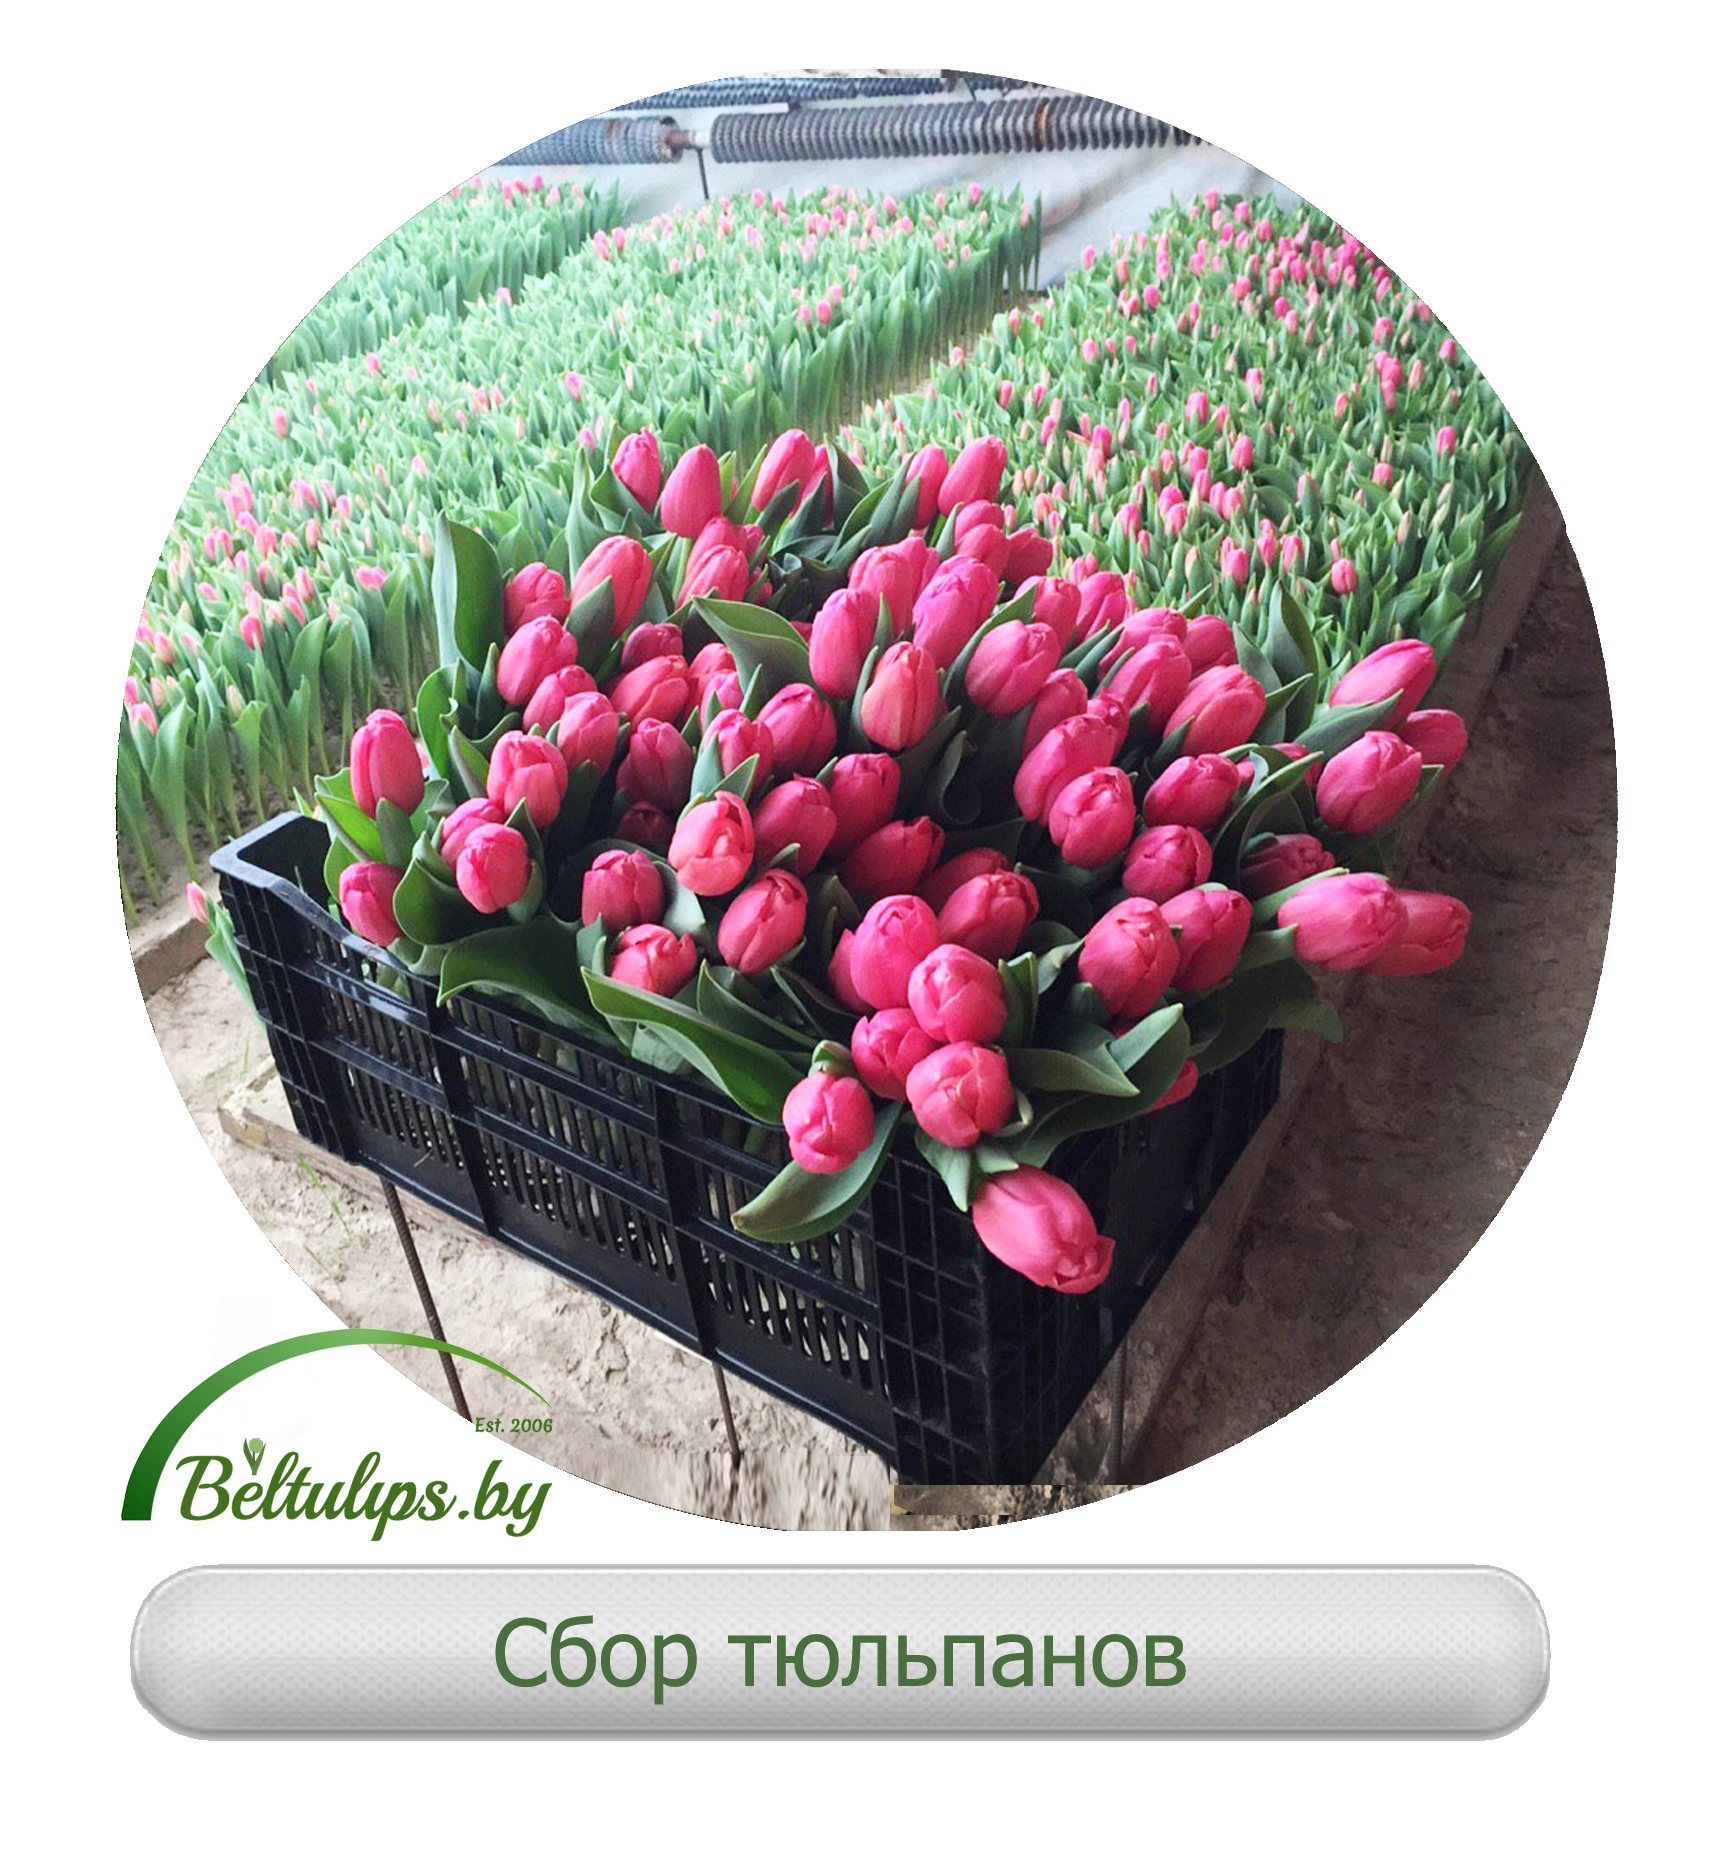 Купить тюльпаны от производителя спб